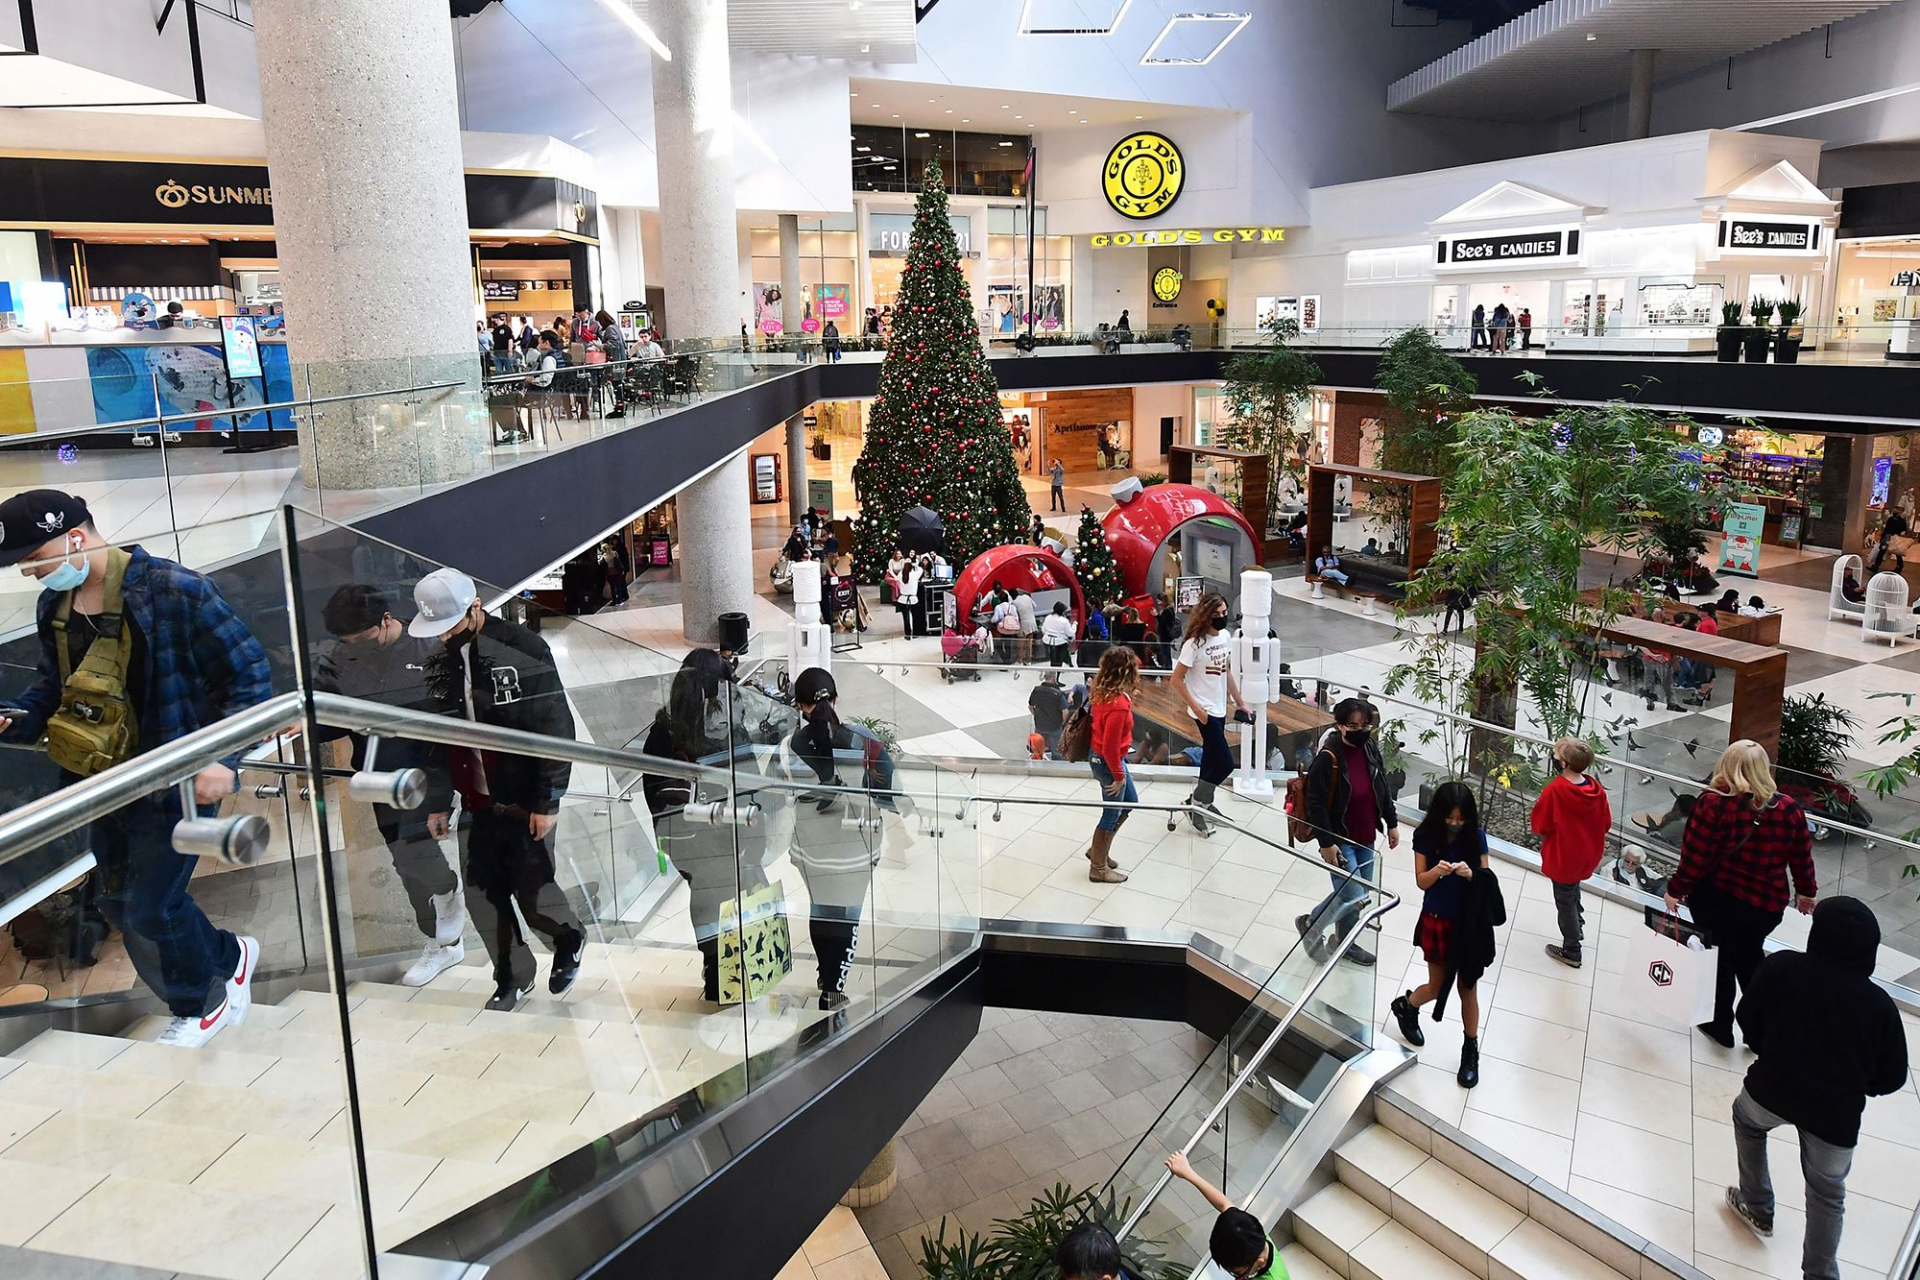 Невесела Коледа: Молове и магазини в Европа сковани от сибирски студ и мрак